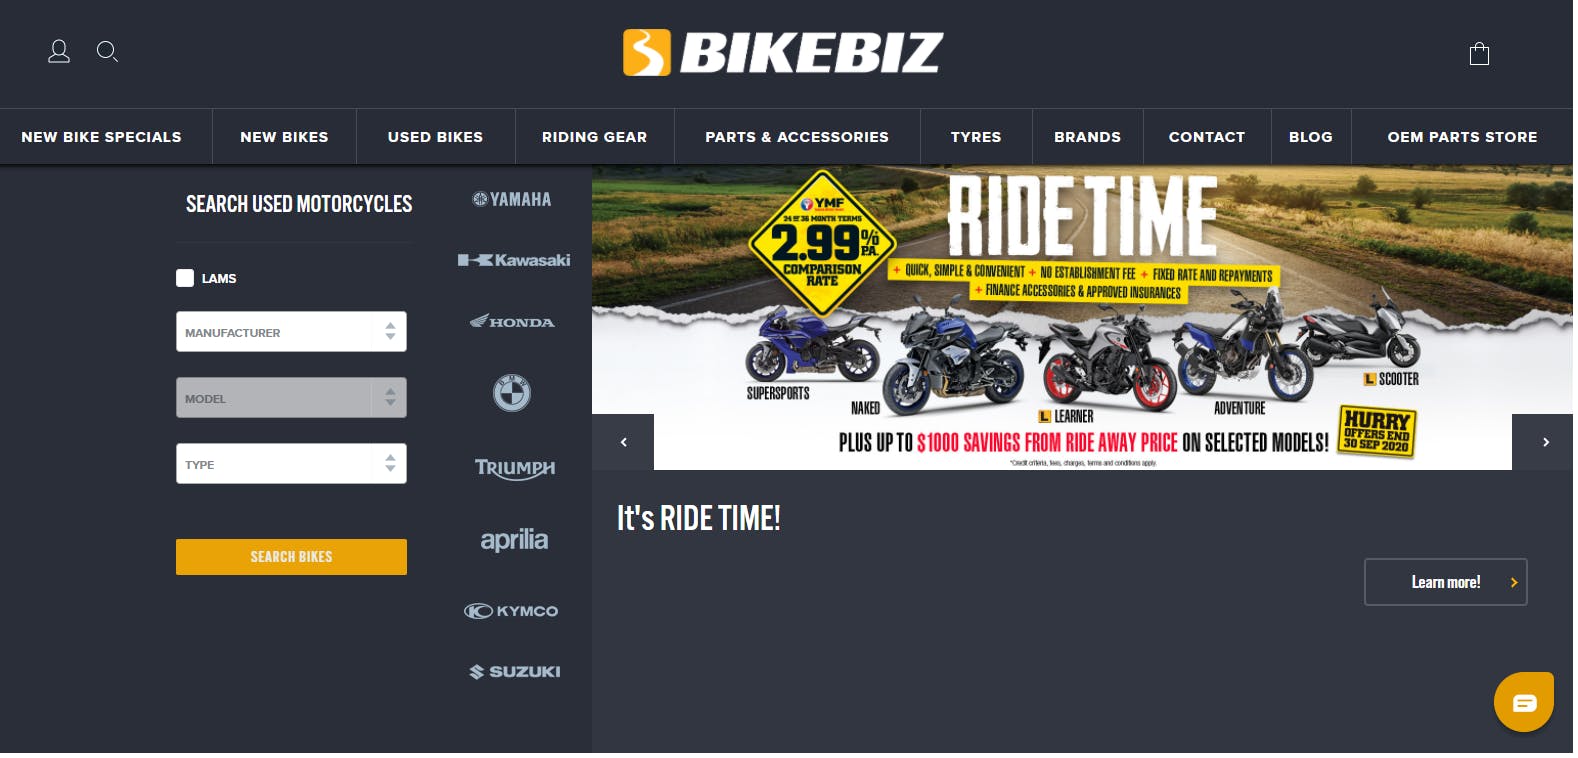 Bikebiz Online store home page